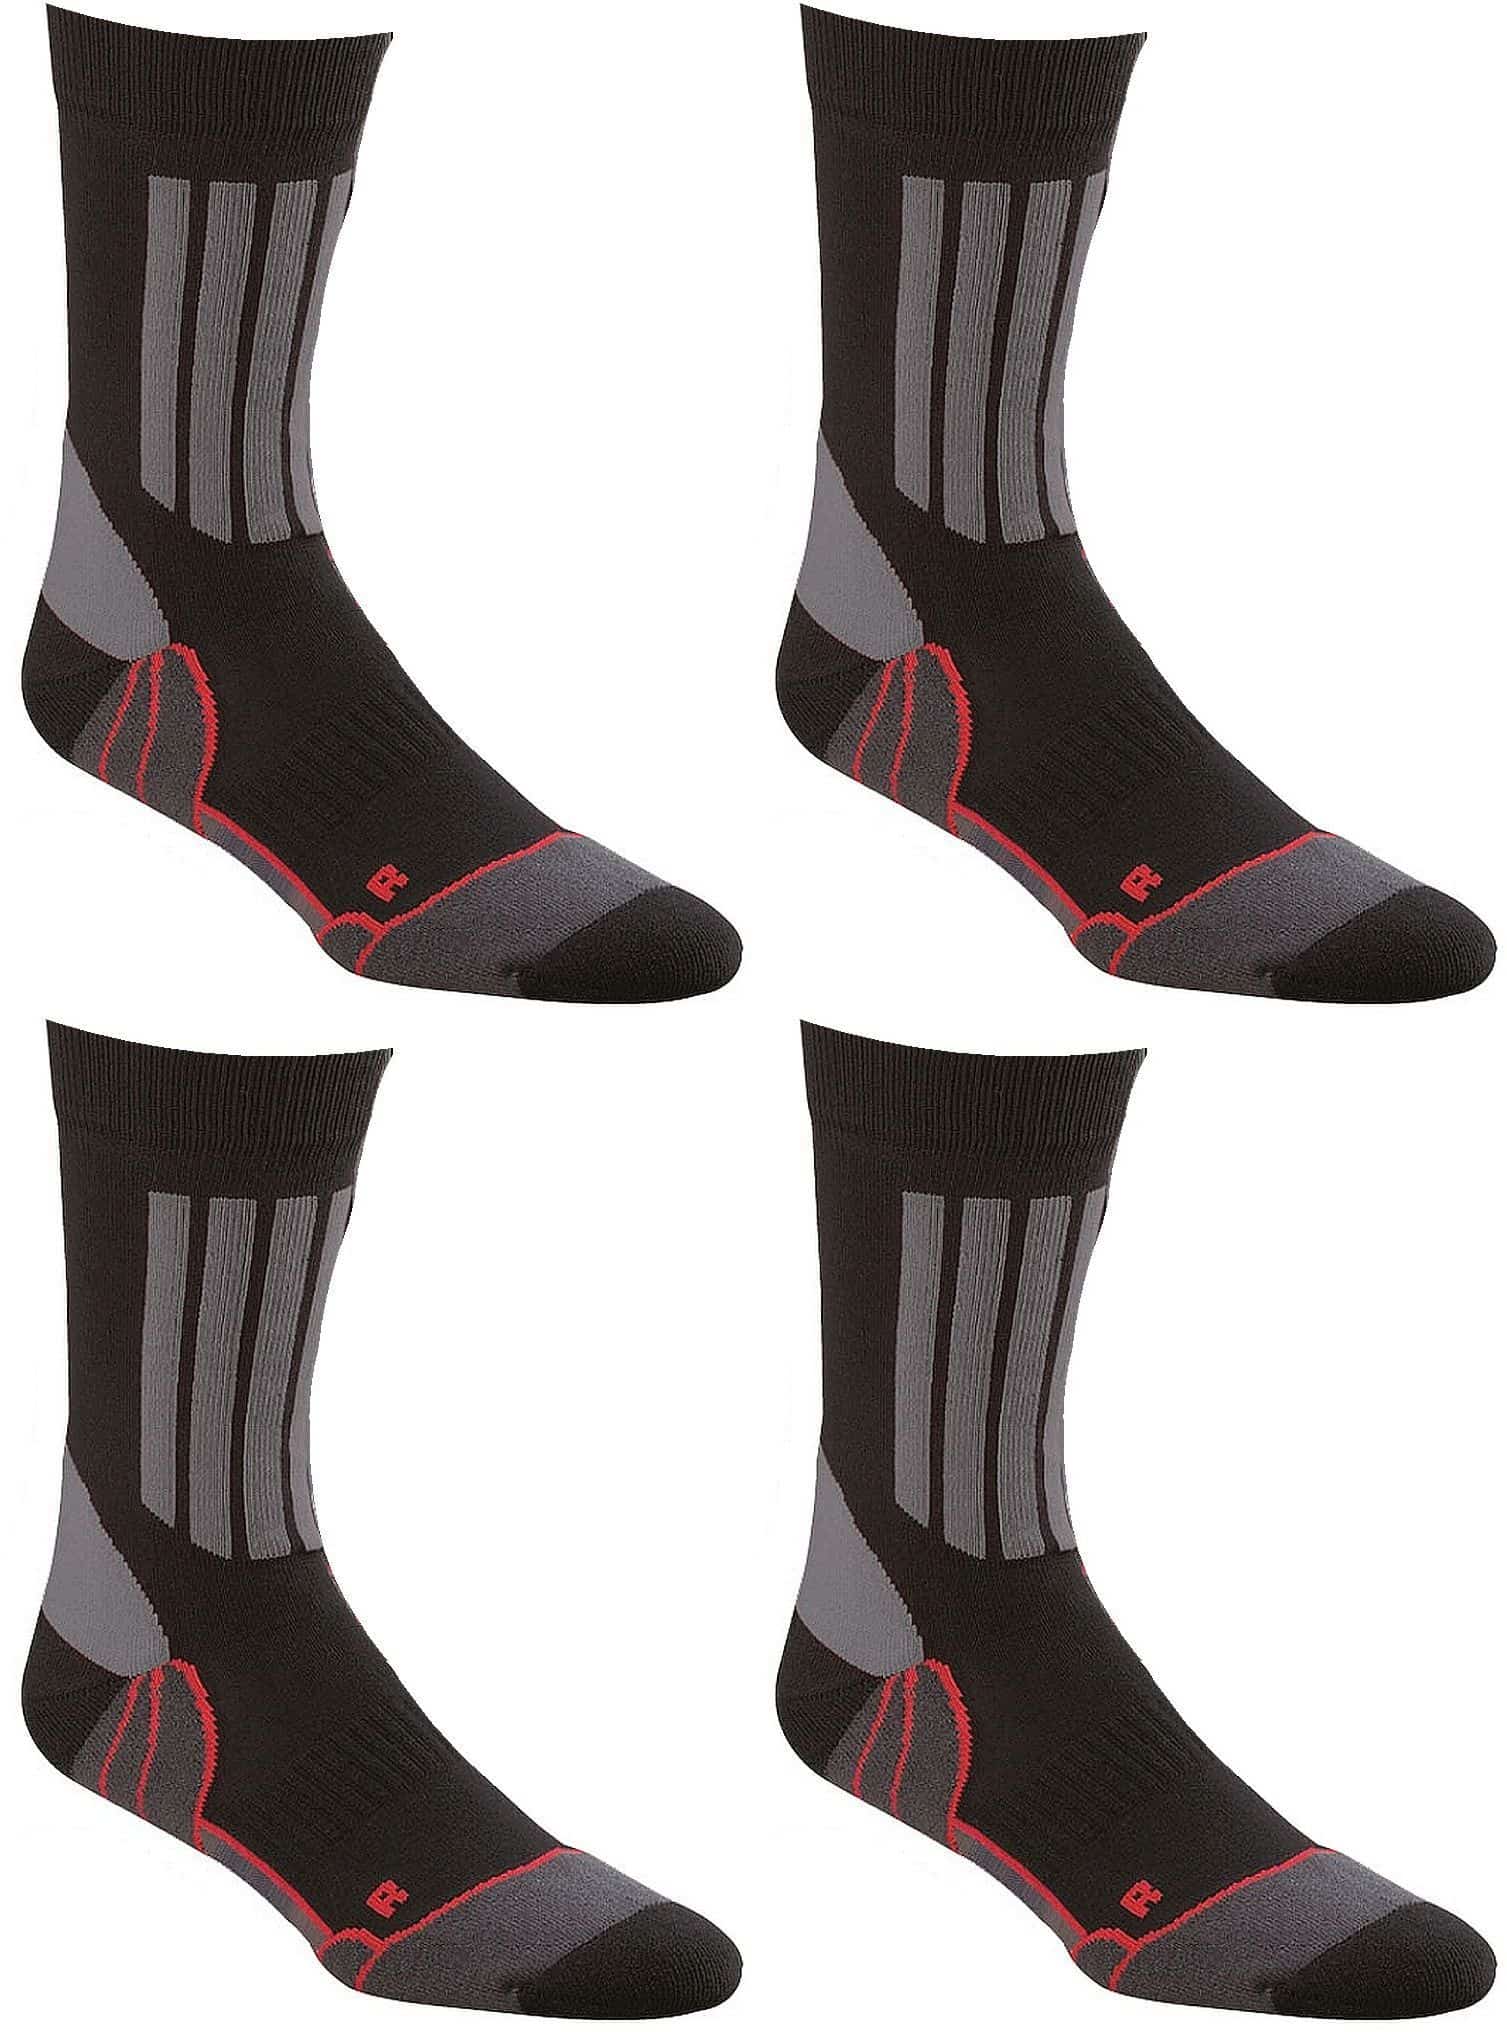  Allrounder Sport-Trekking-Socken mit Silberfaser-Optimale Passform 1 oder 2 Paar